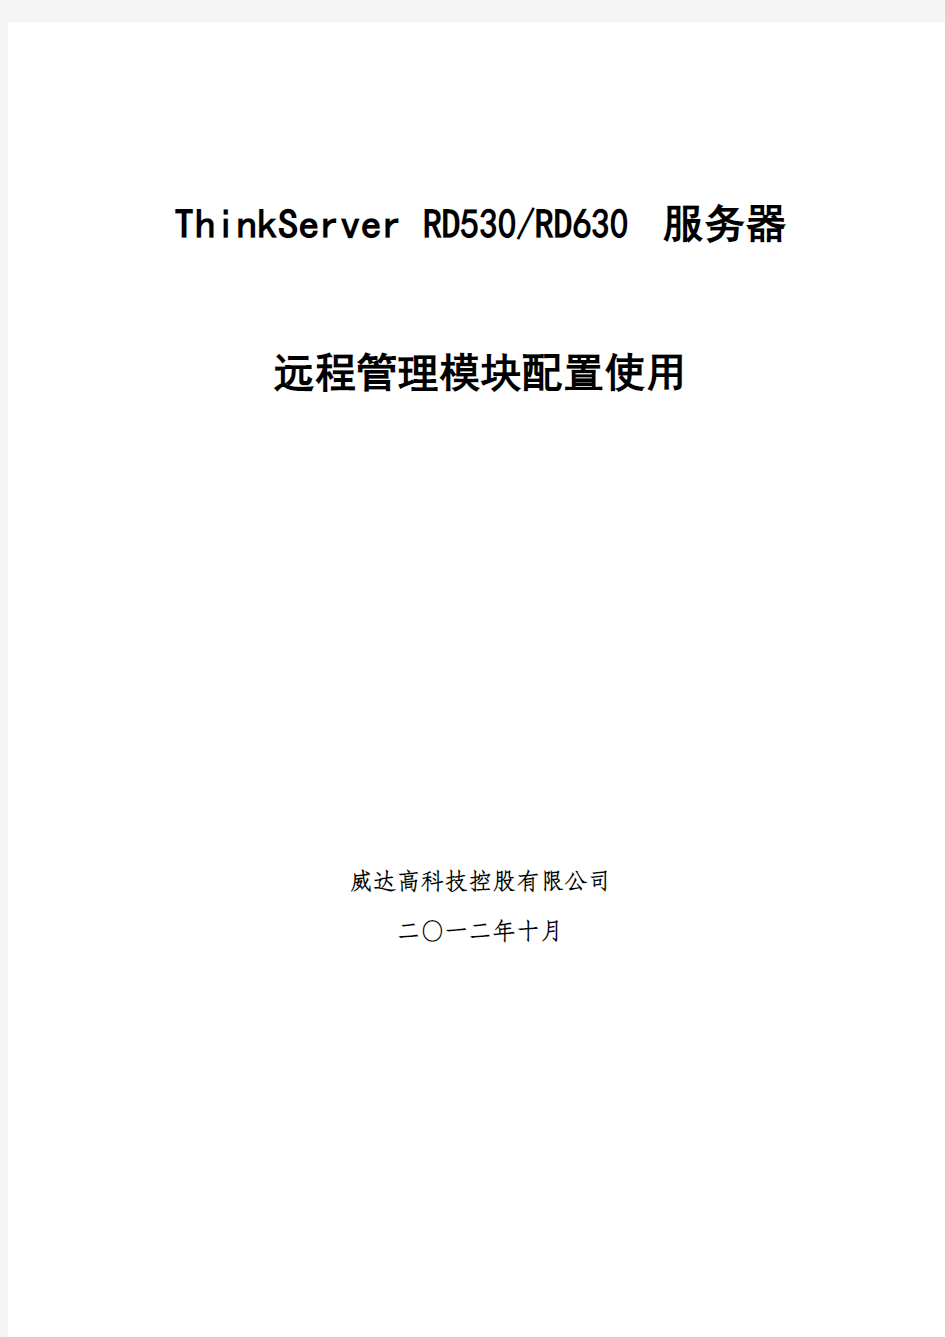 ThinkServer服务器远程管理模块的配置使用